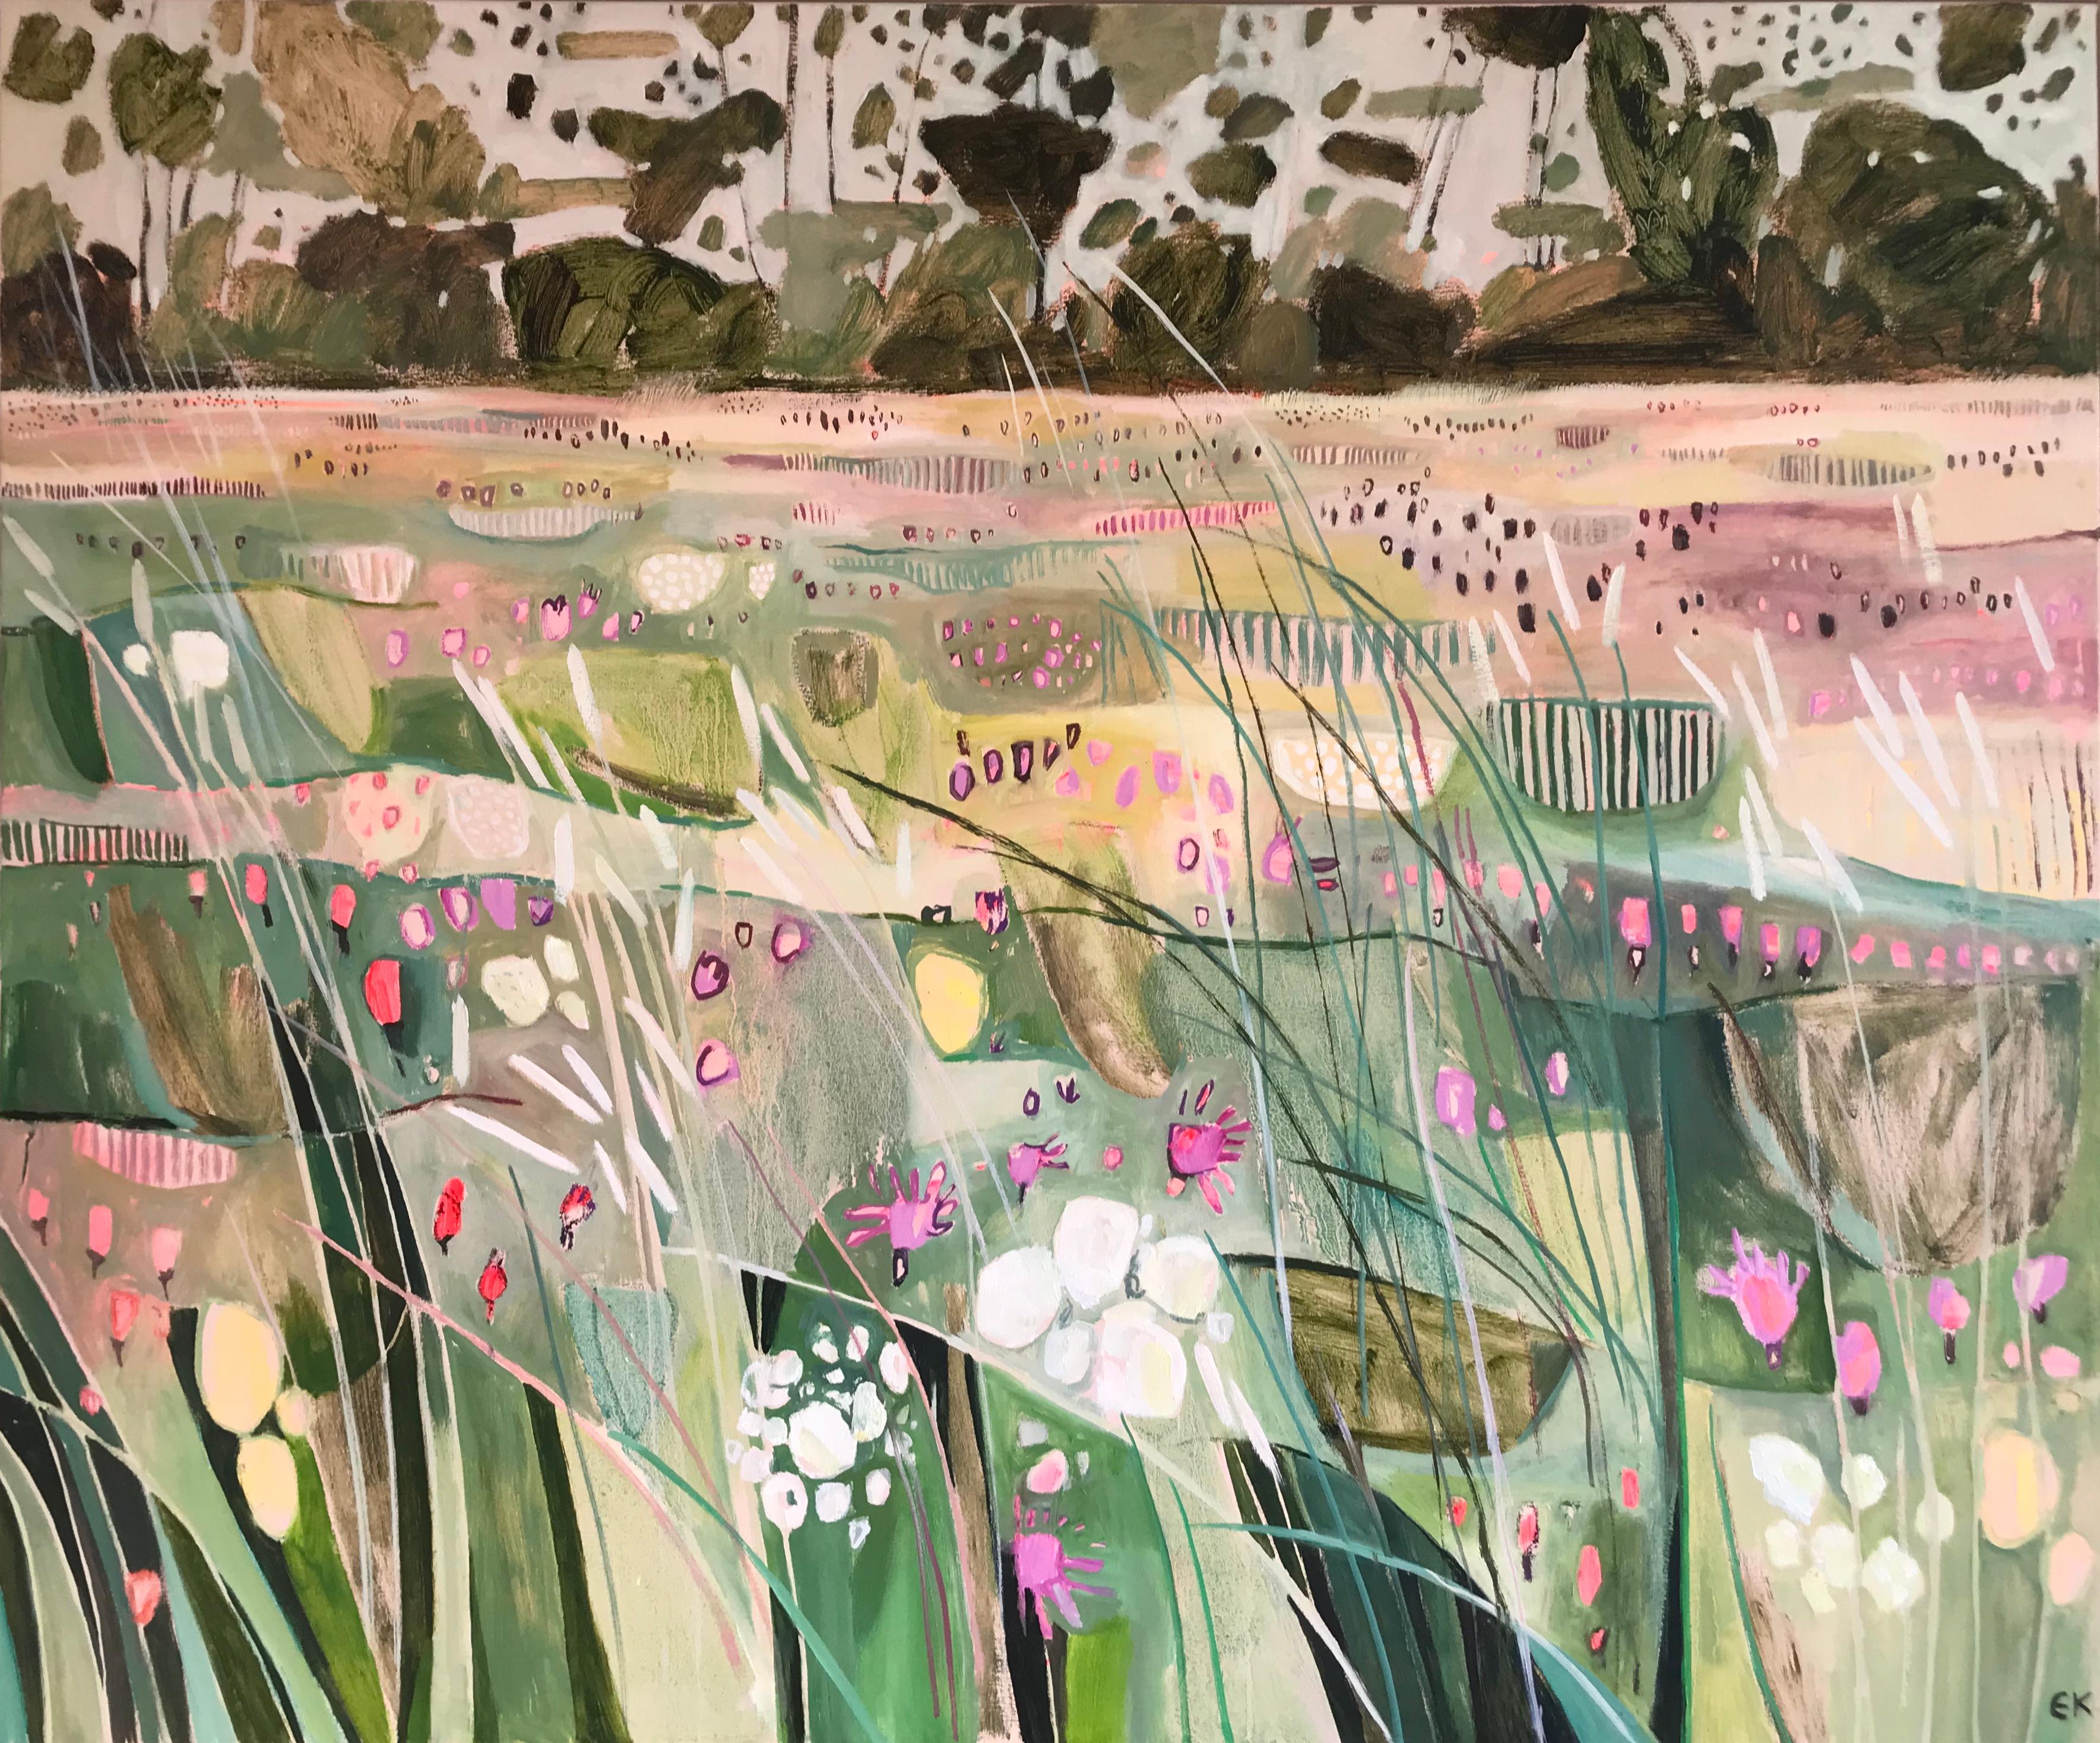 Abstract Painting Elaine Kazimierczuk - La prairie de Hinksey avec grands gazons, paysage, fleurs, Oxford, cotswolds, prairies